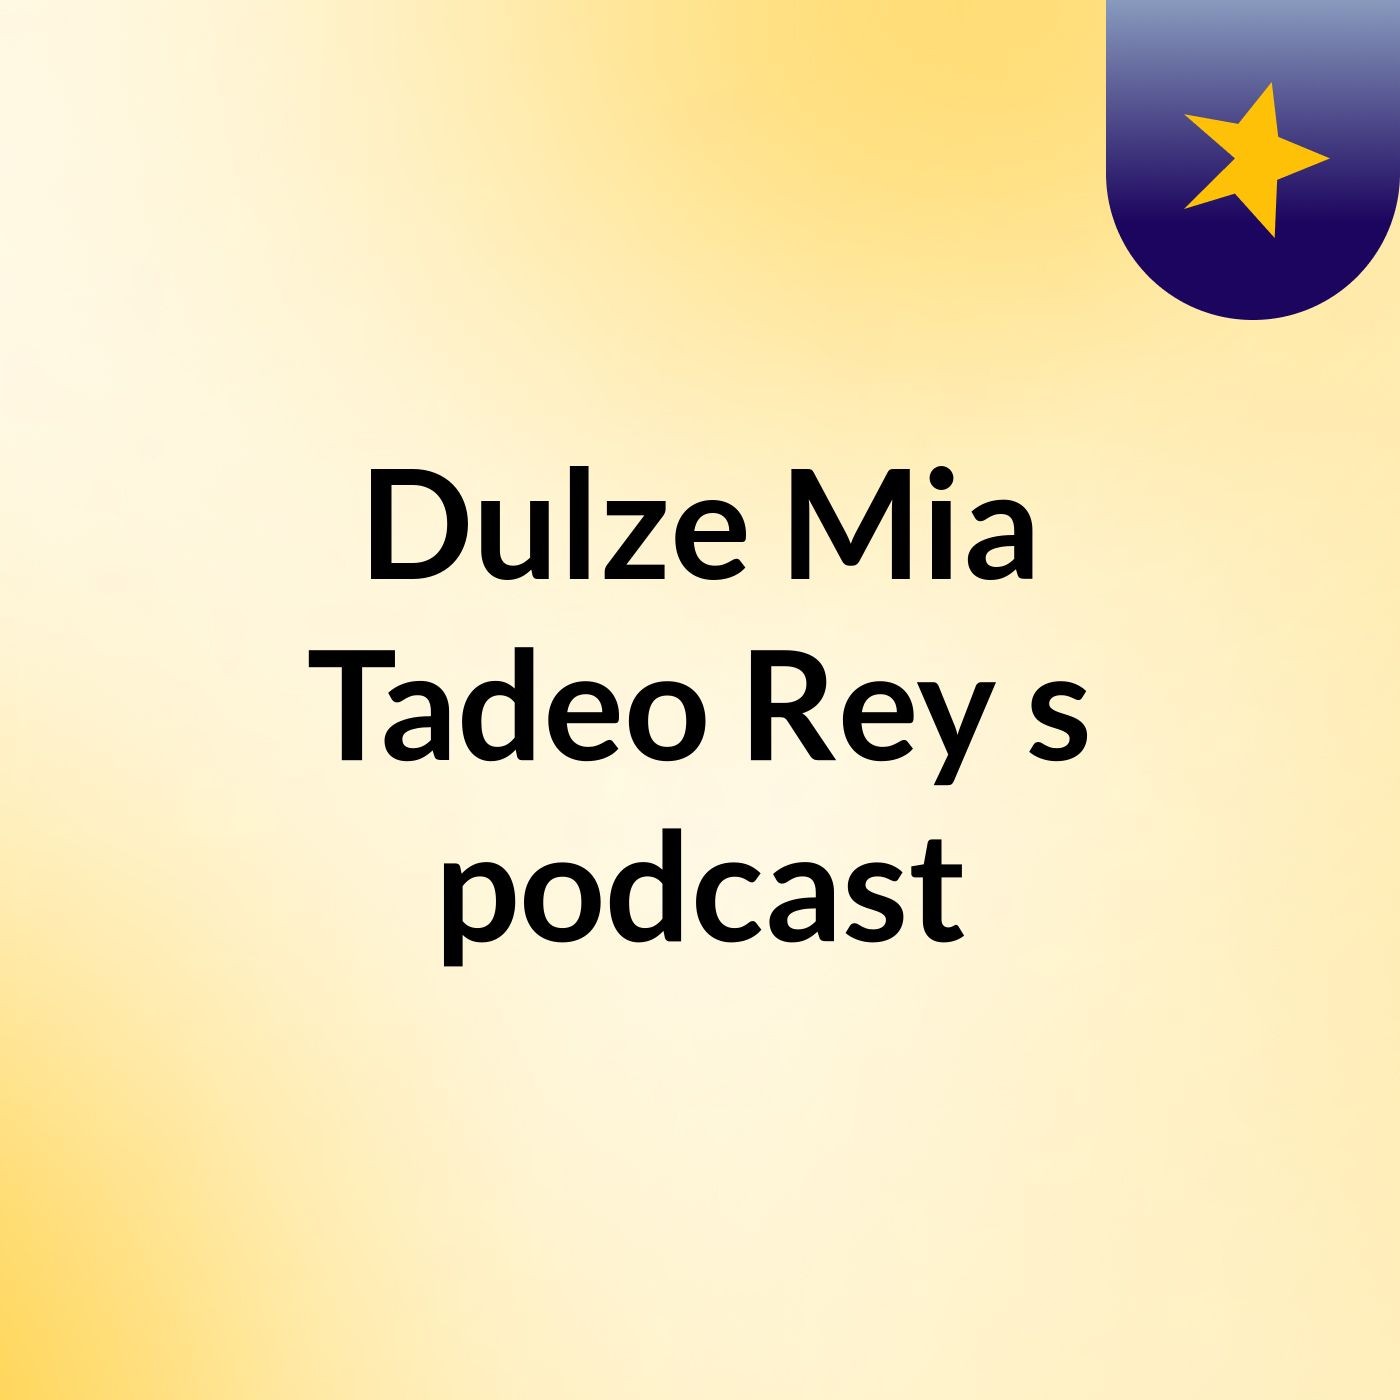 Dulze Mia Tadeo Rey - Podcast